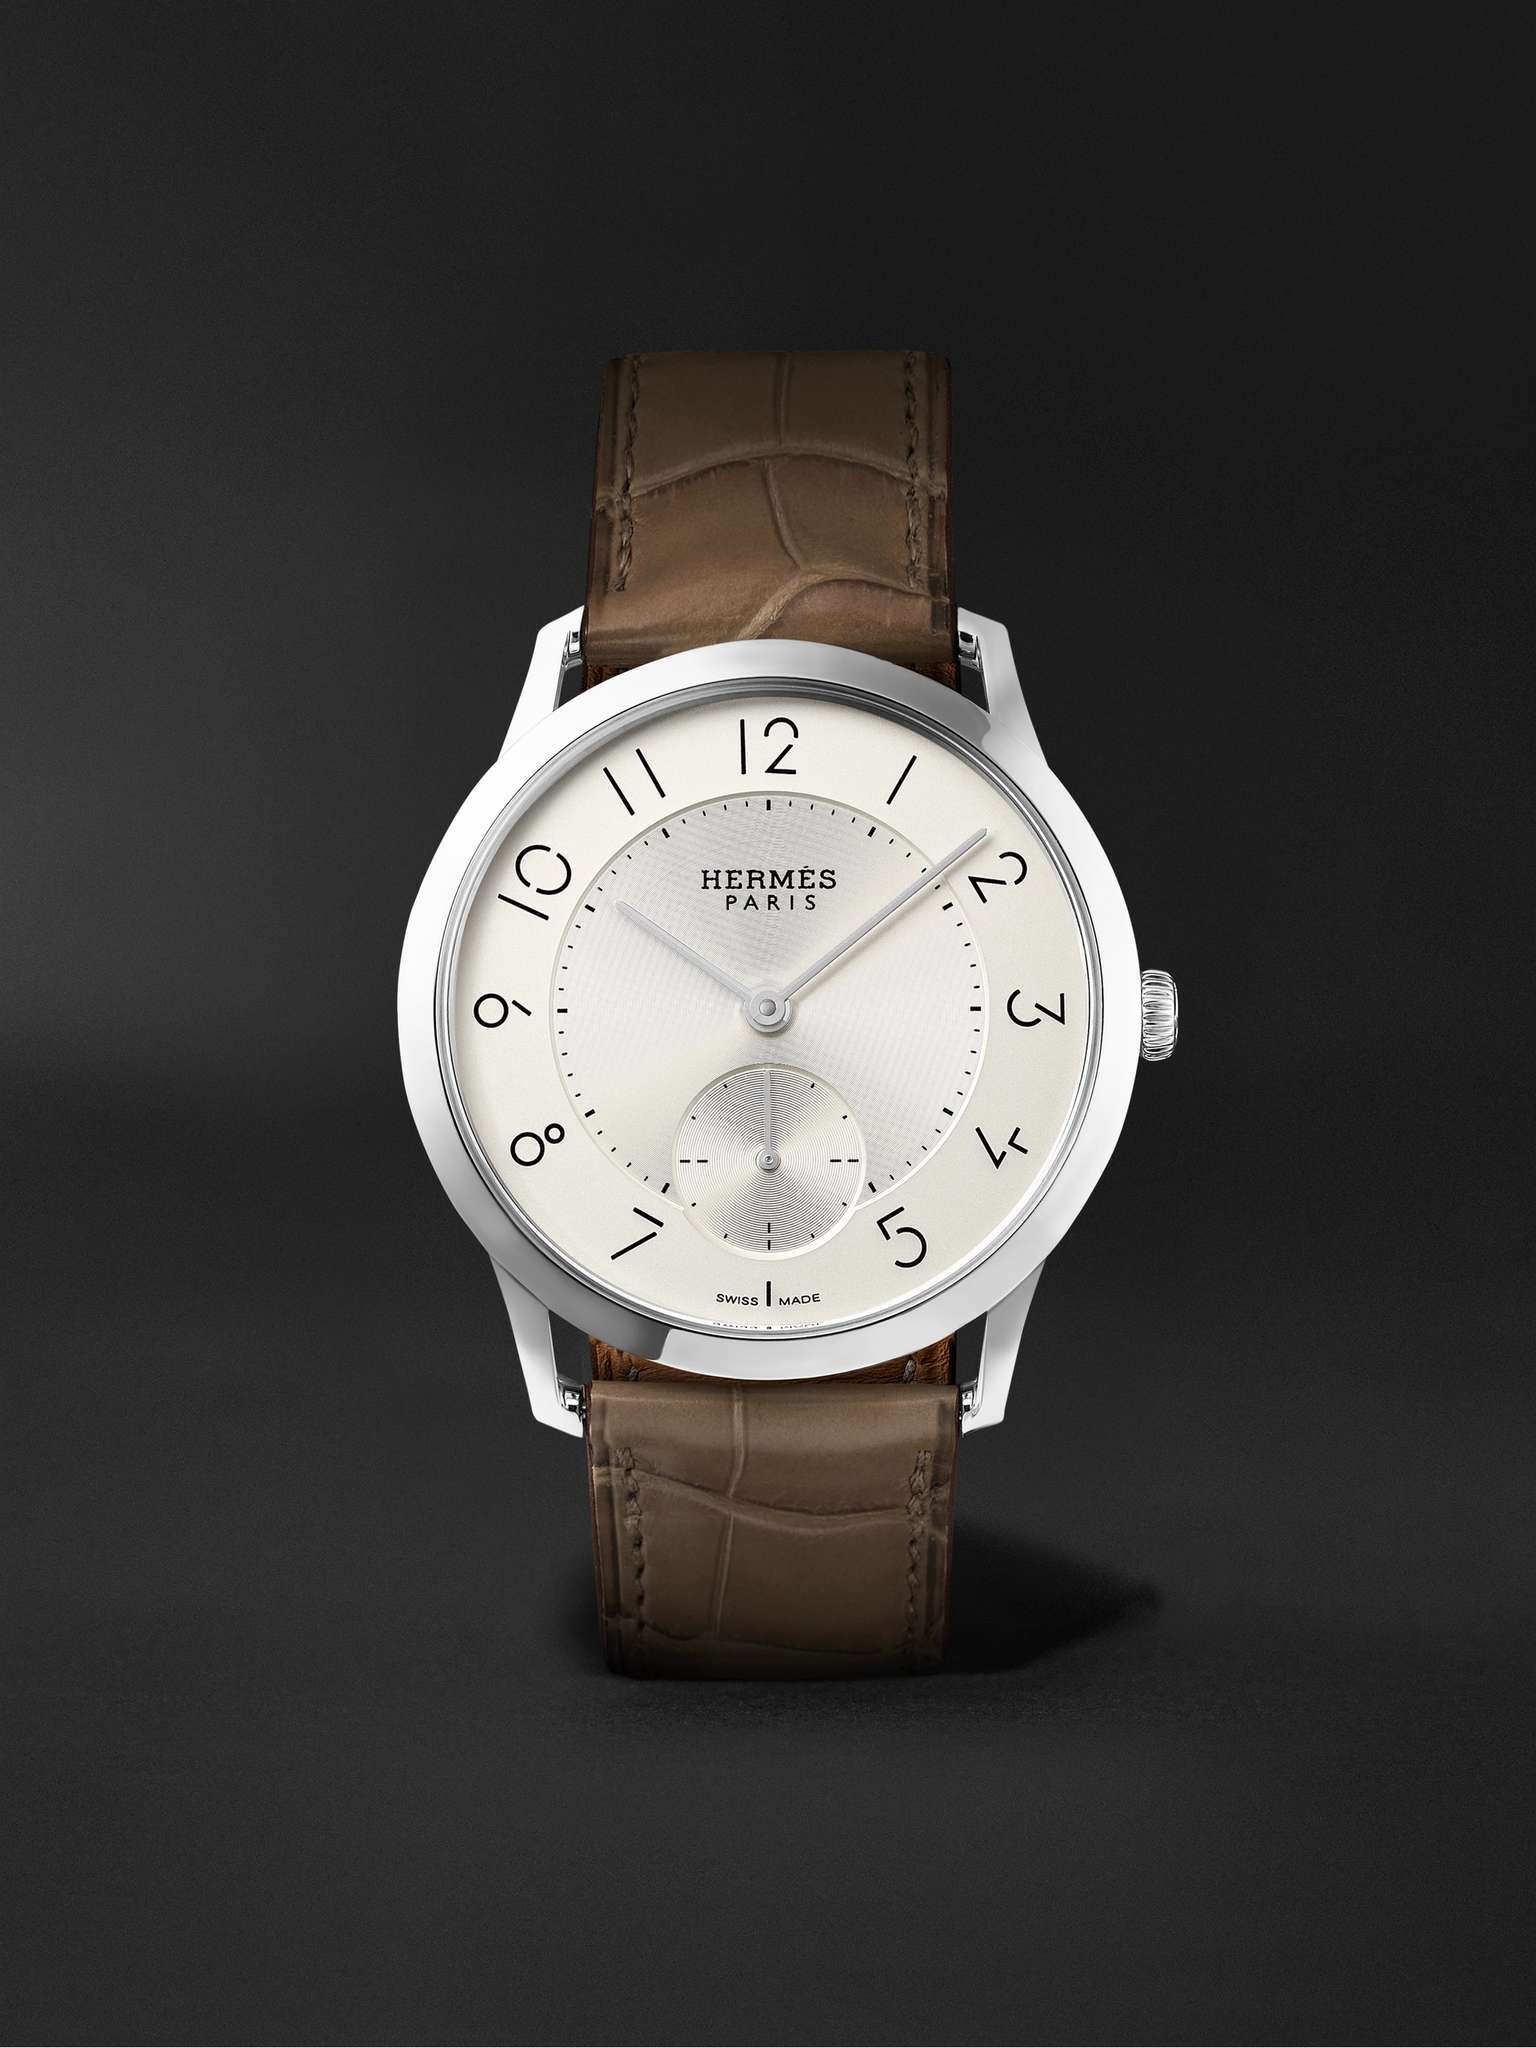 Slim d'Hermès Acier Automatic 39.5mm Stainless Steel and Alligator Watch, Ref. No. W045266WW00 - 1